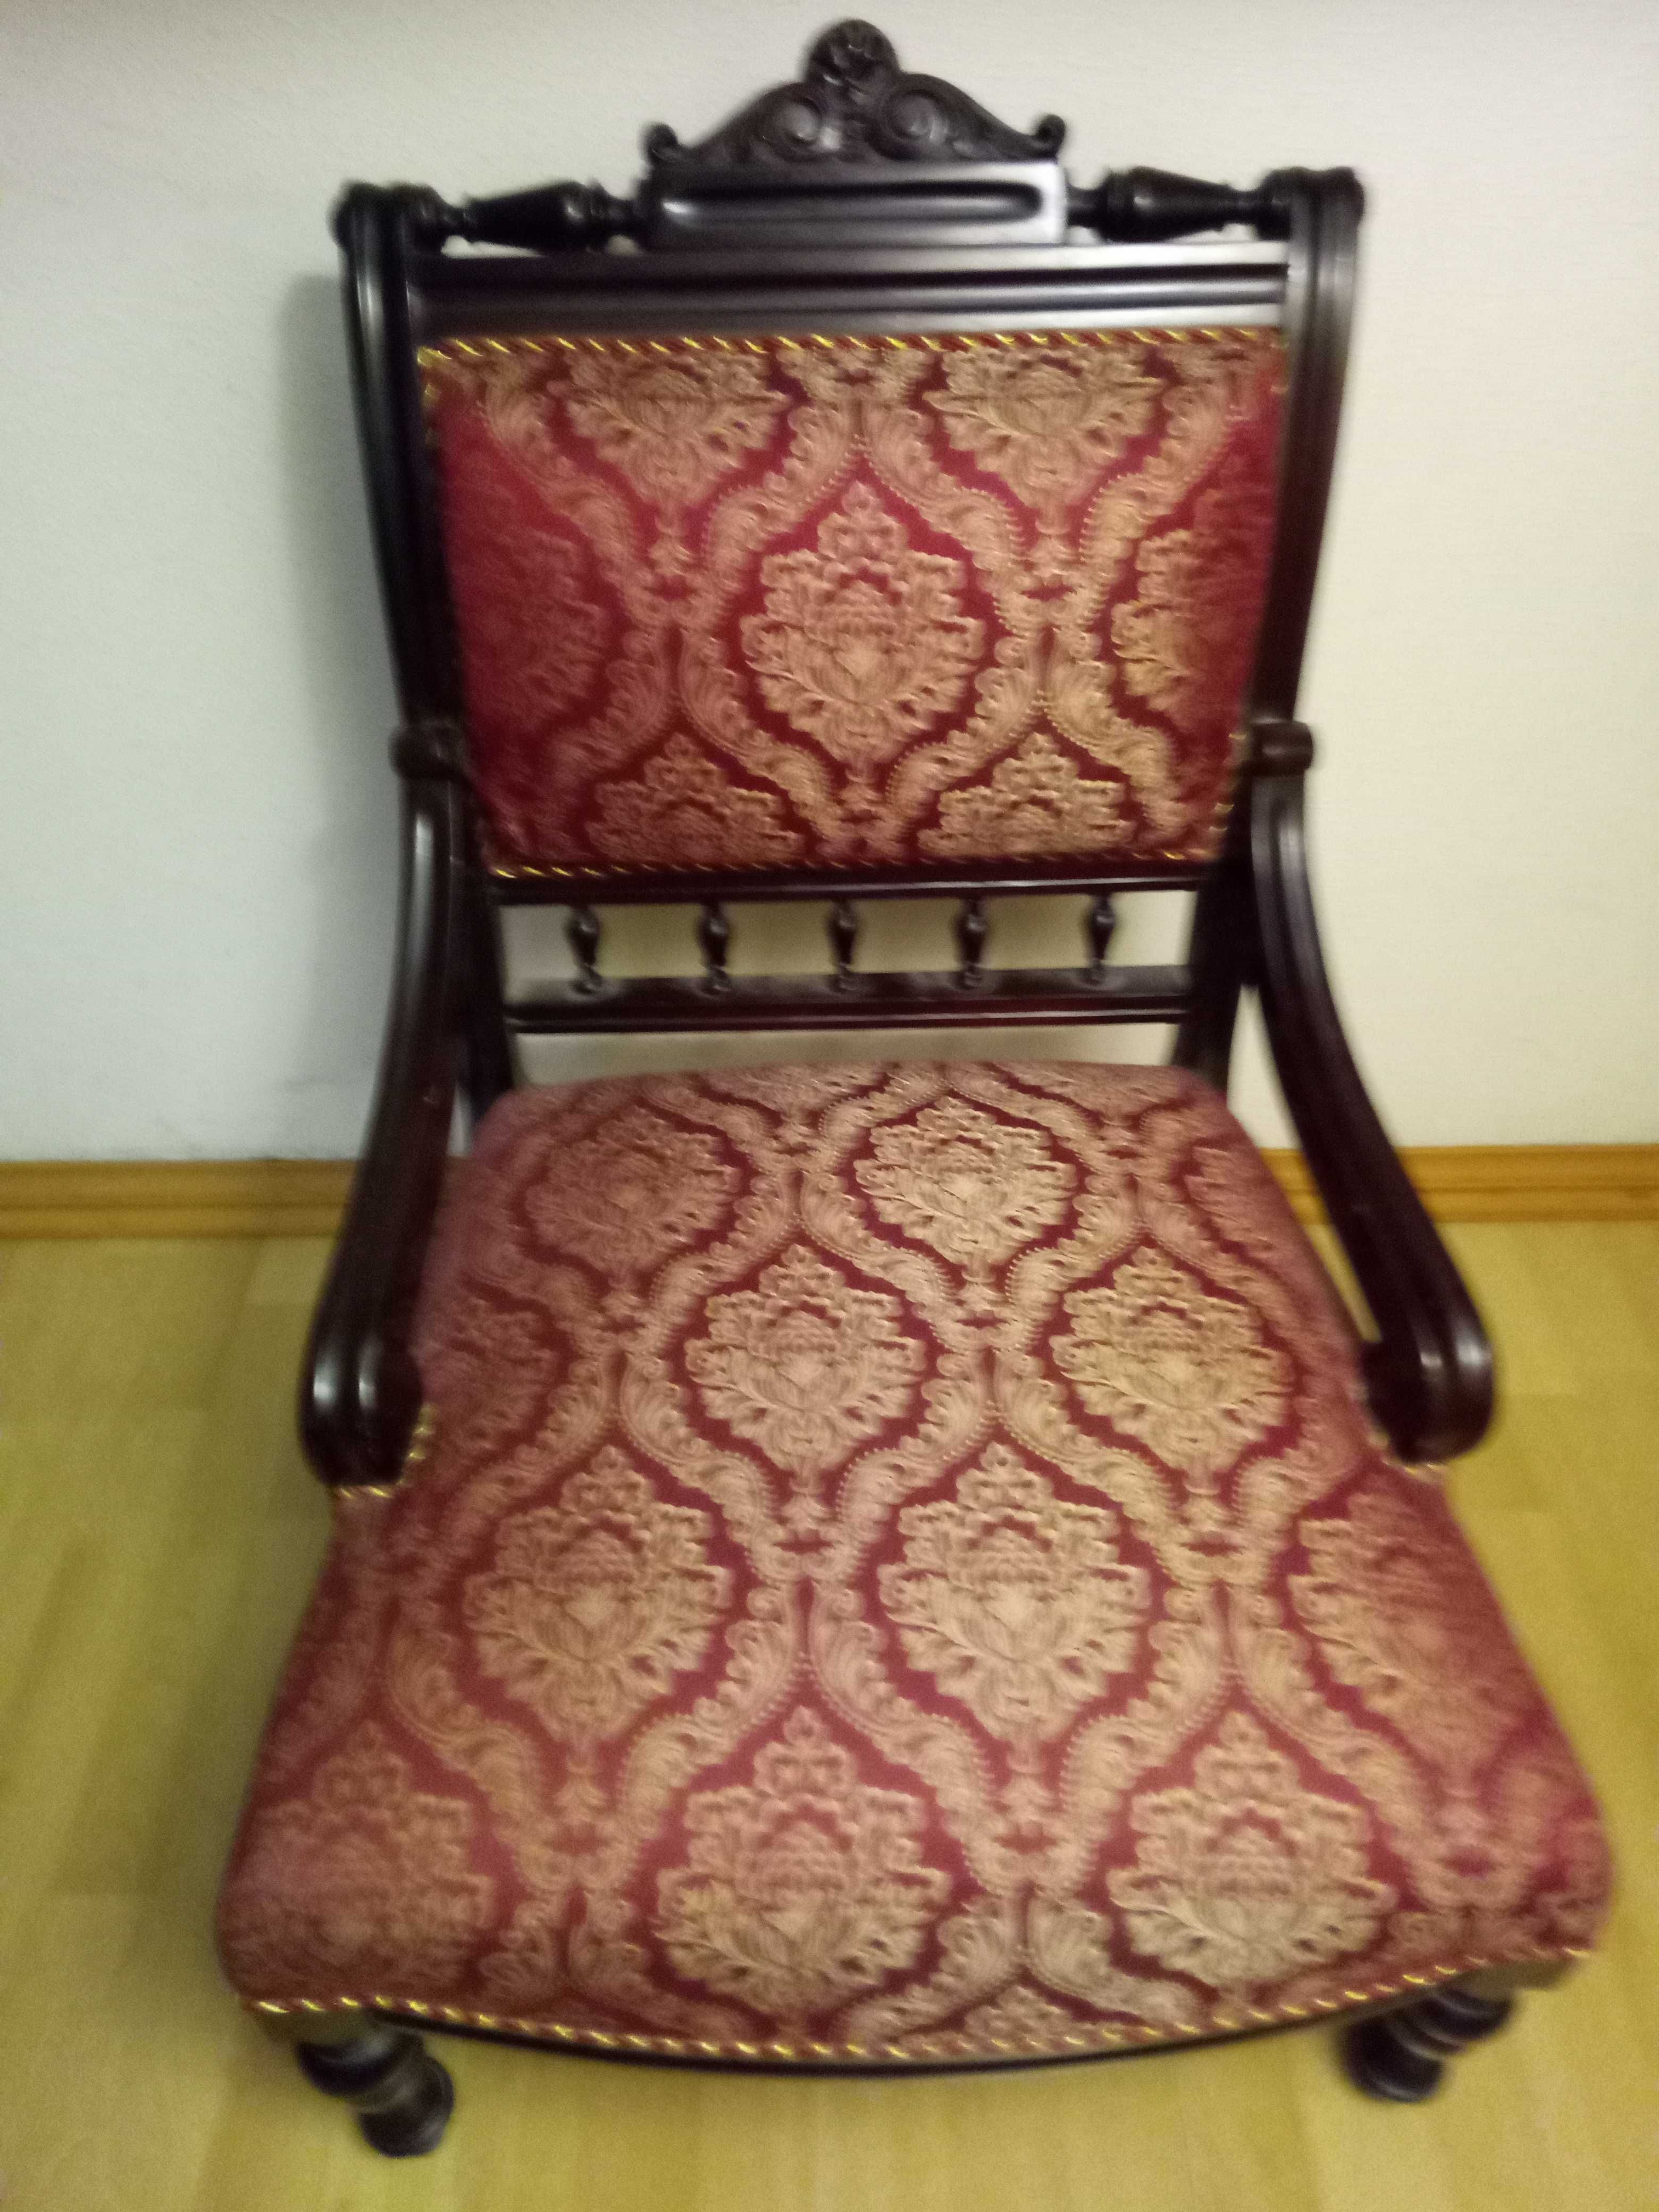 Кресло антикварное